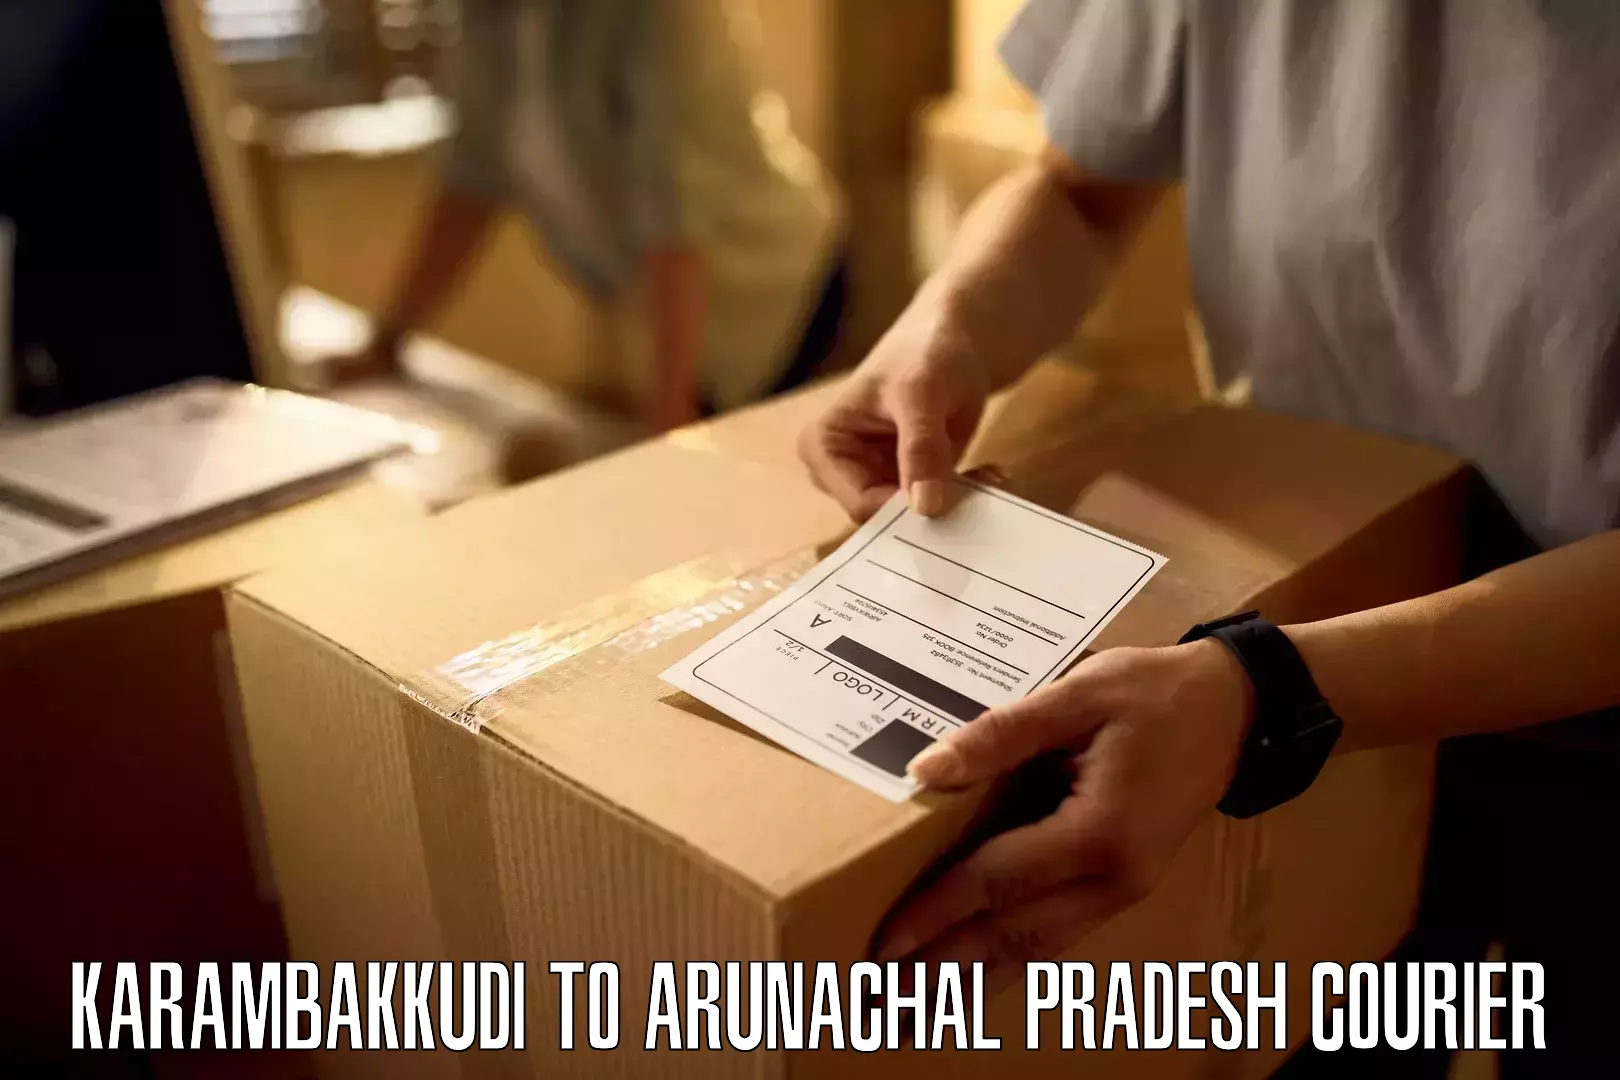 Large package courier Karambakkudi to Lohit